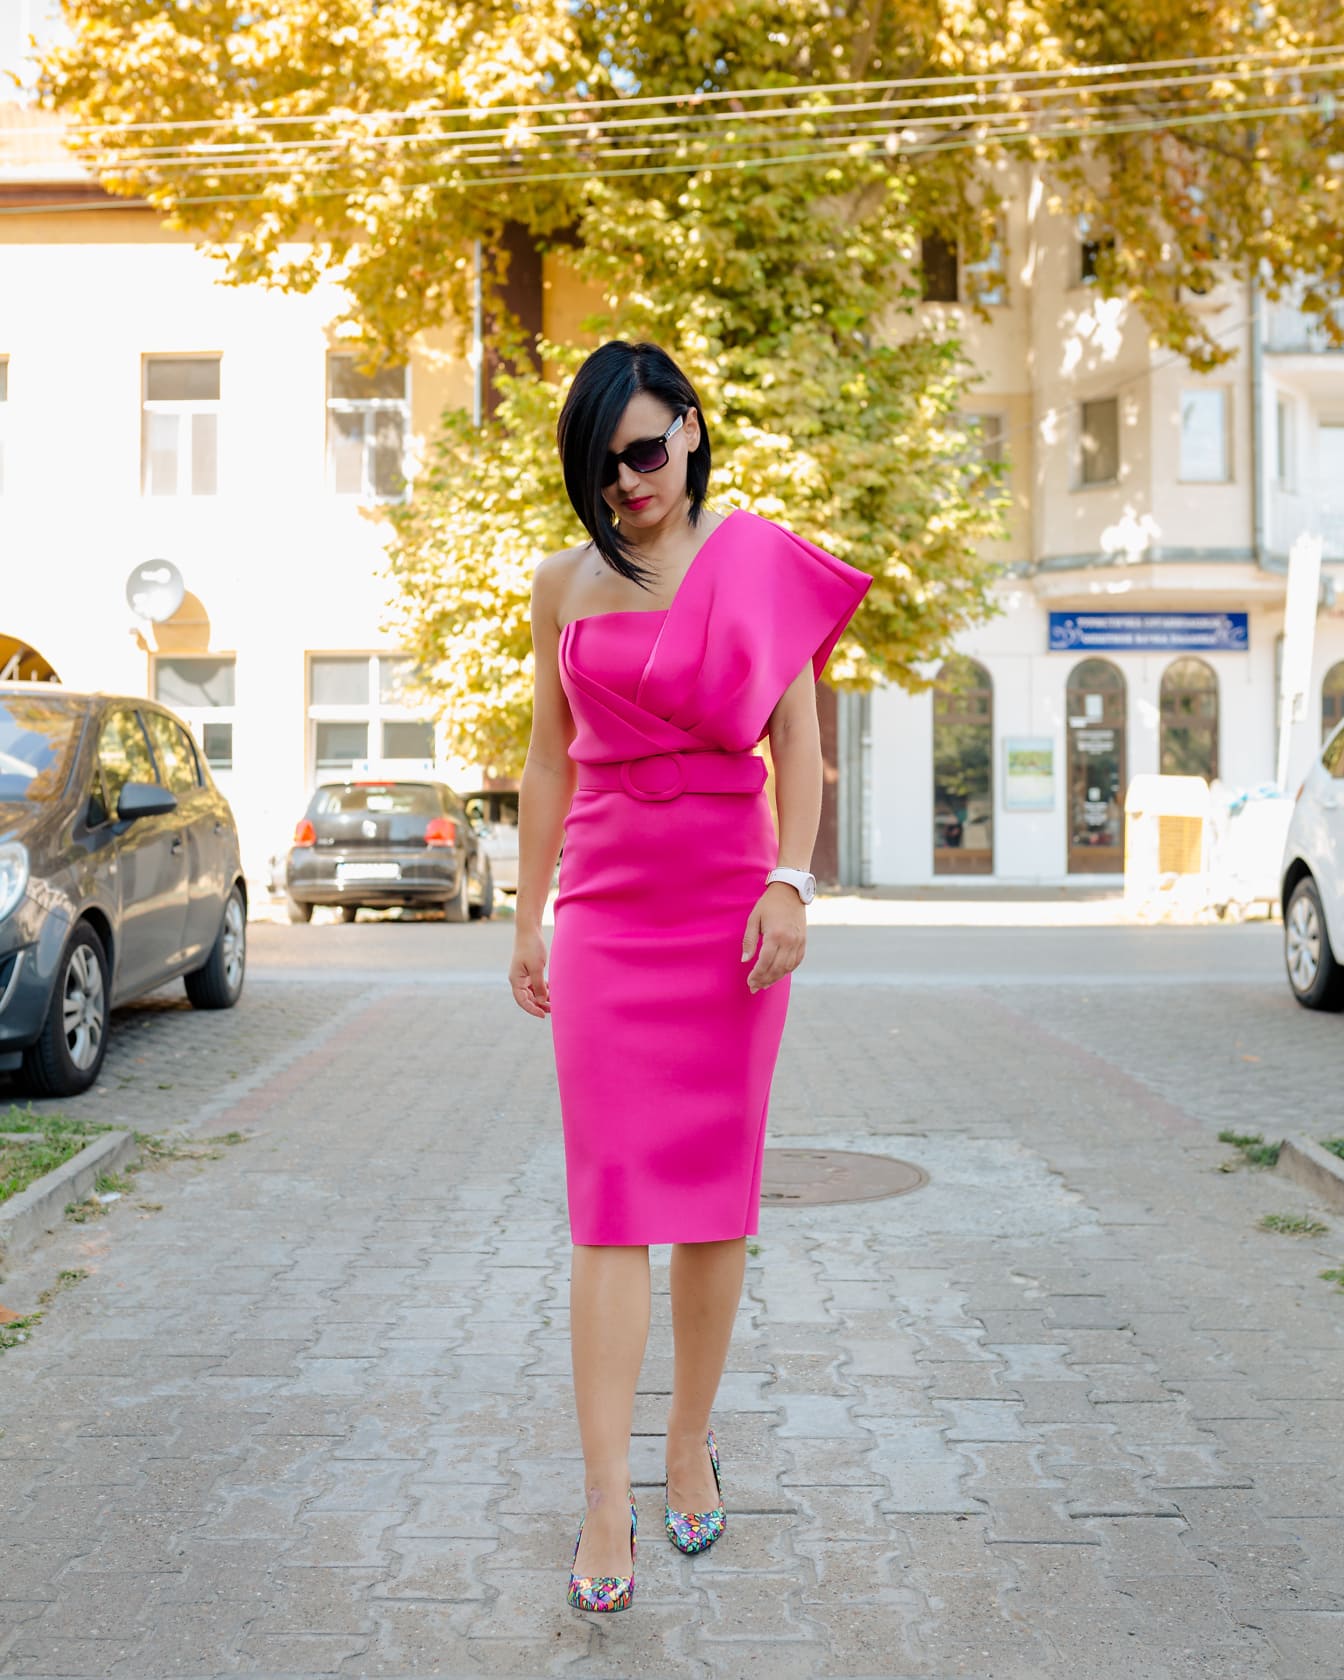 Elegancka kobieta w modnej różowej sukience spacerująca po ulicy